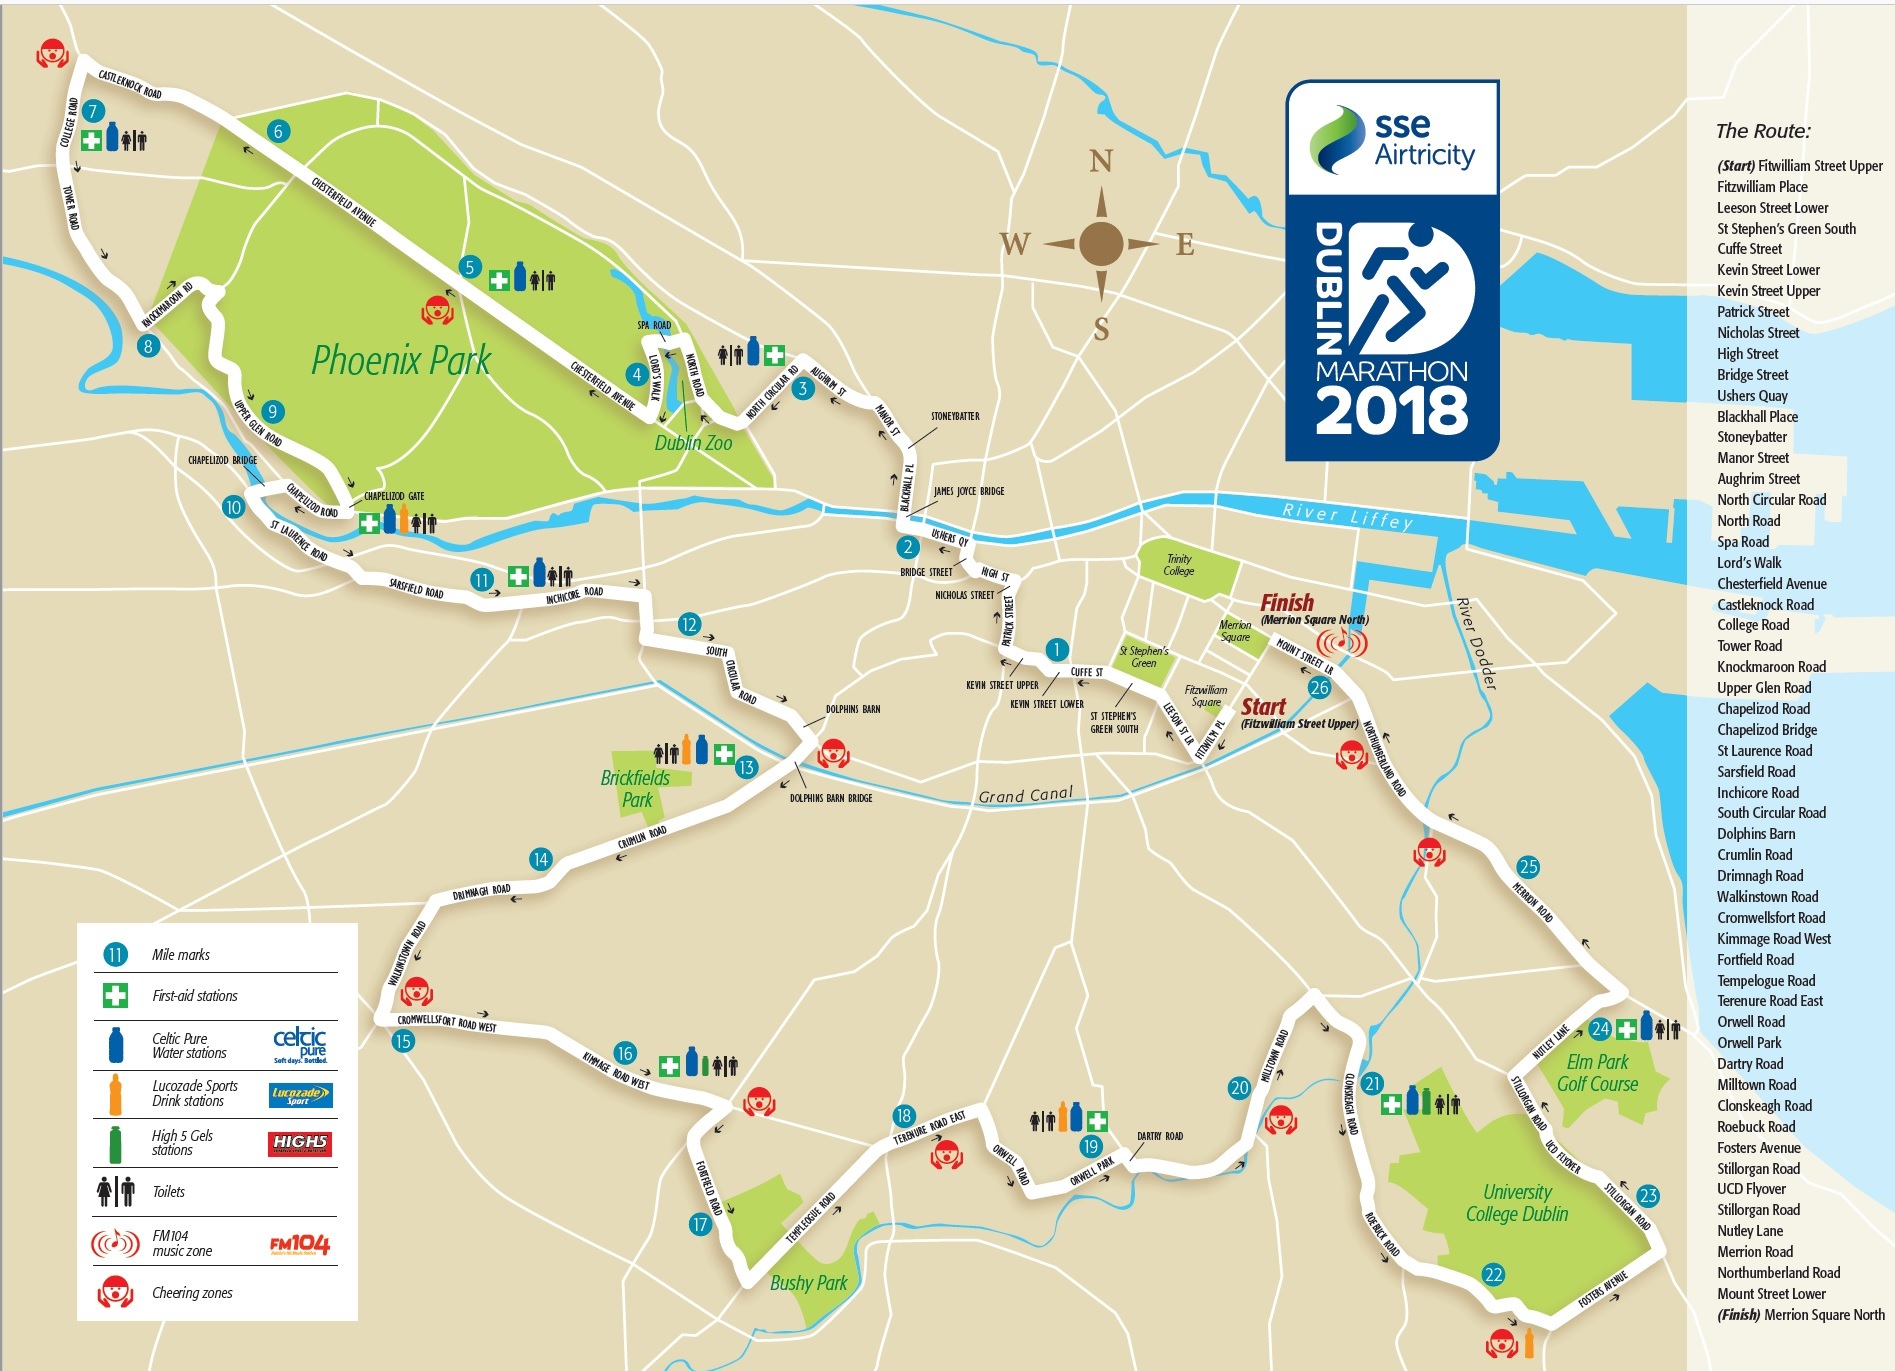 Dublin Marathon 2019 Route | Traffic Diversions | theAA